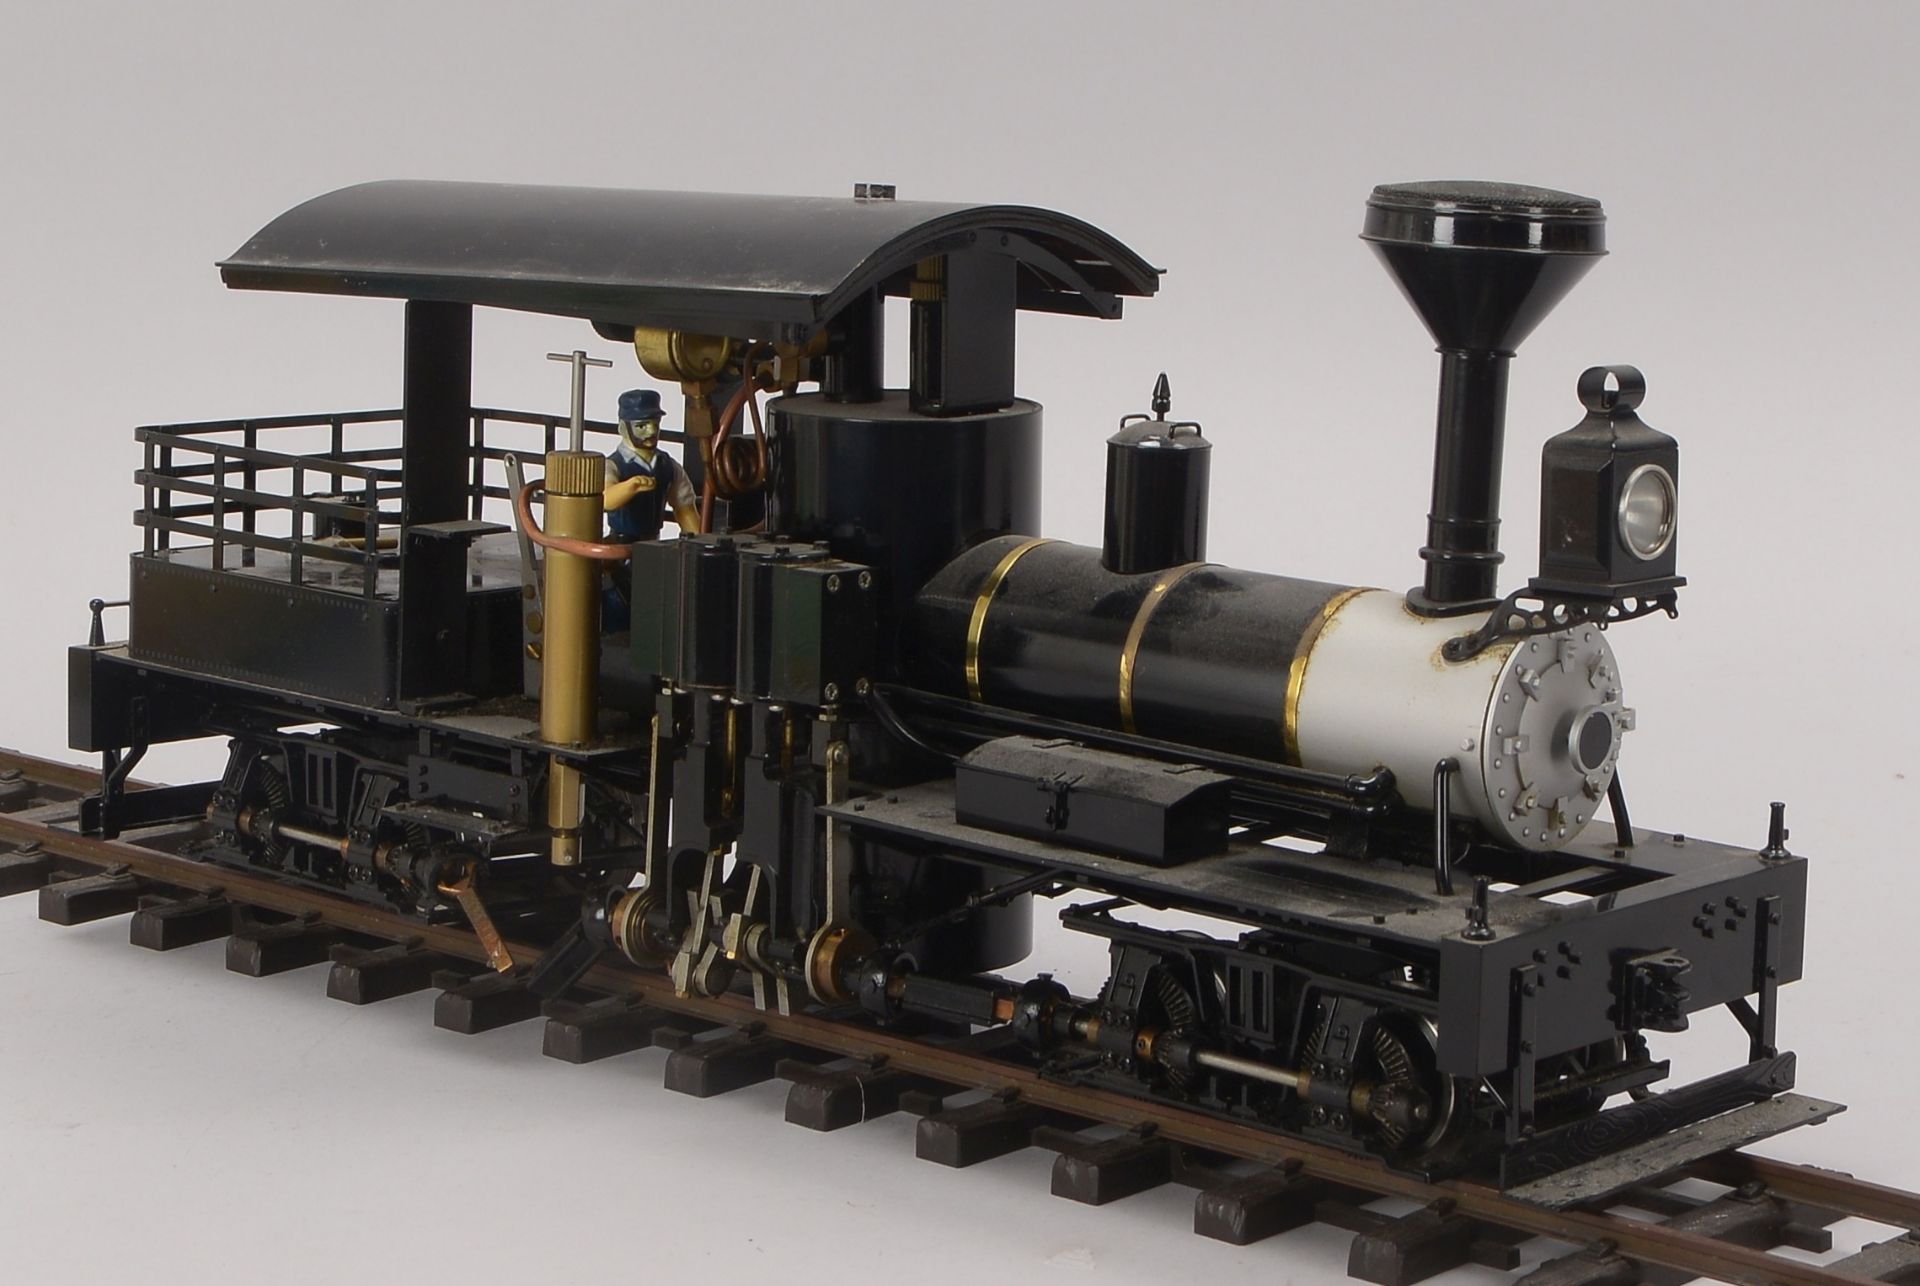 Accucraft Lokomotive m.Tender, Messing / Stahl, Gasantrieb, Livesteam, Spur 45 mm, gebrauchter Zusta - Bild 3 aus 4